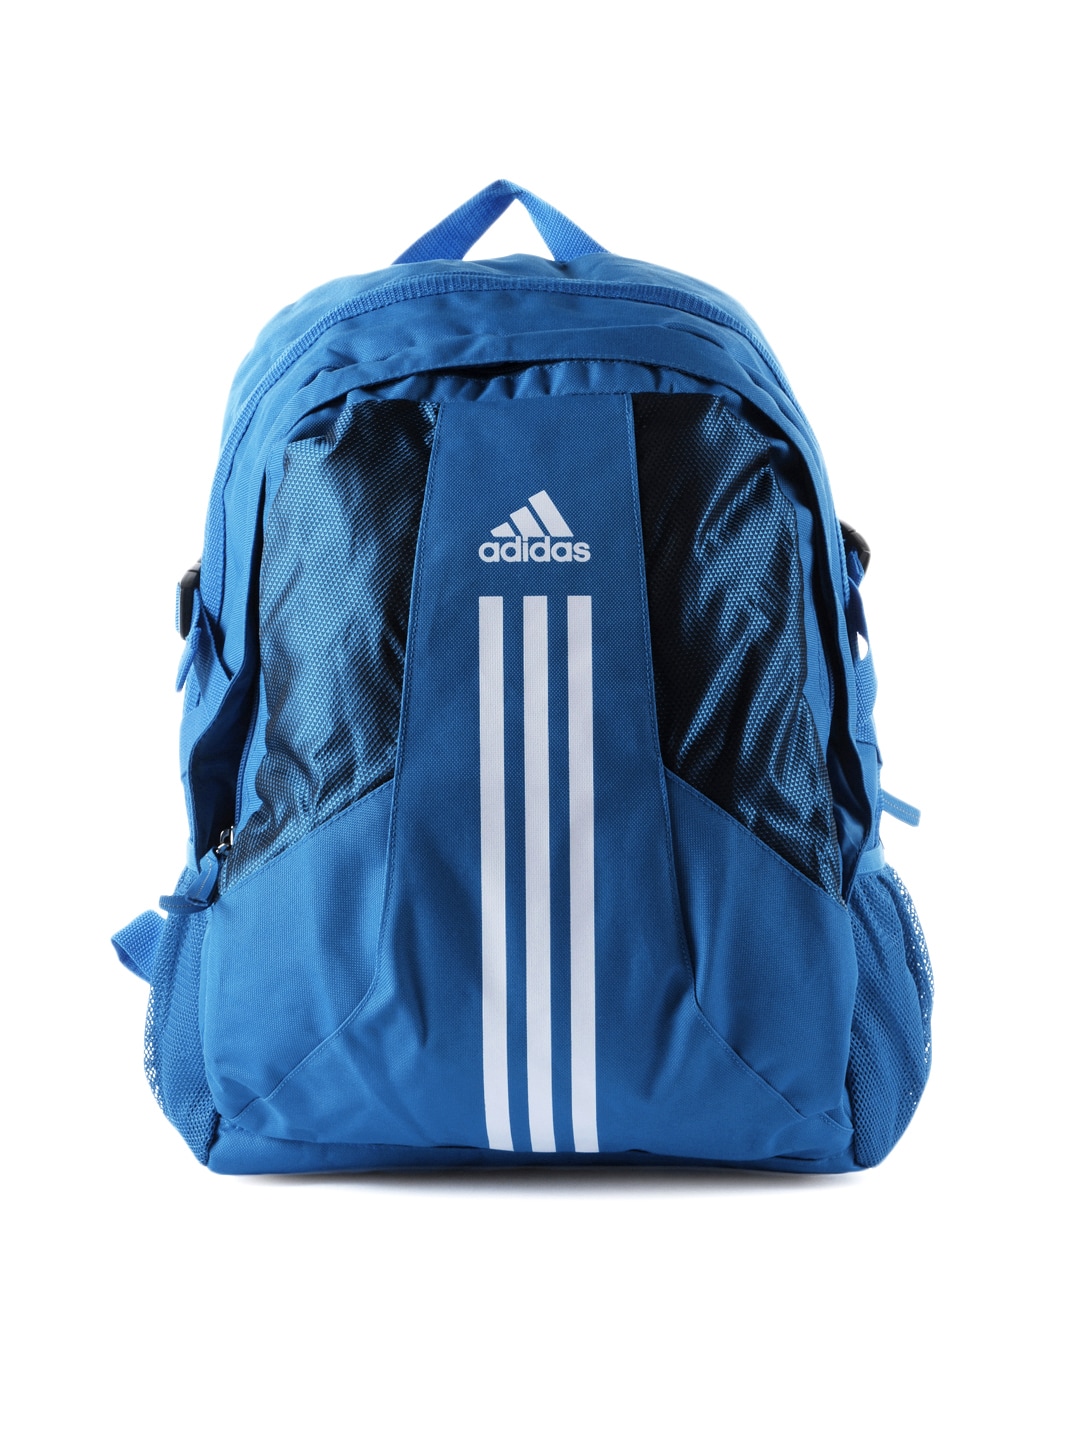 ADIDAS Unisex Power Blue Backpack